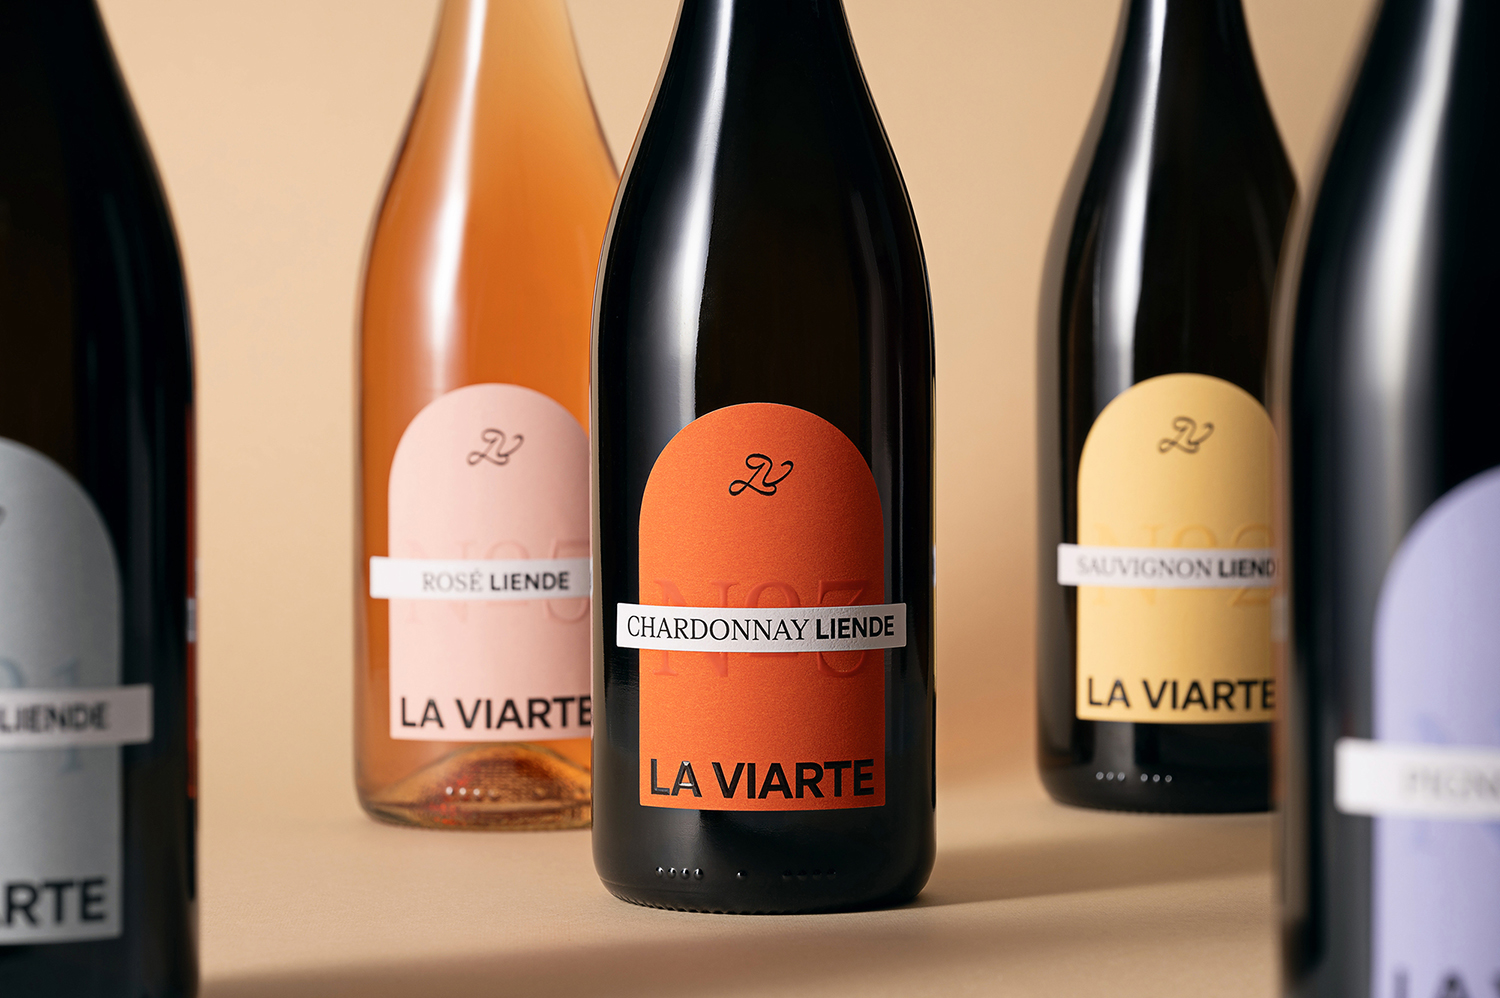 Paolo Vendramini Creates Wine Label Packaging Design for La Viarte’s Liende Wine Collection